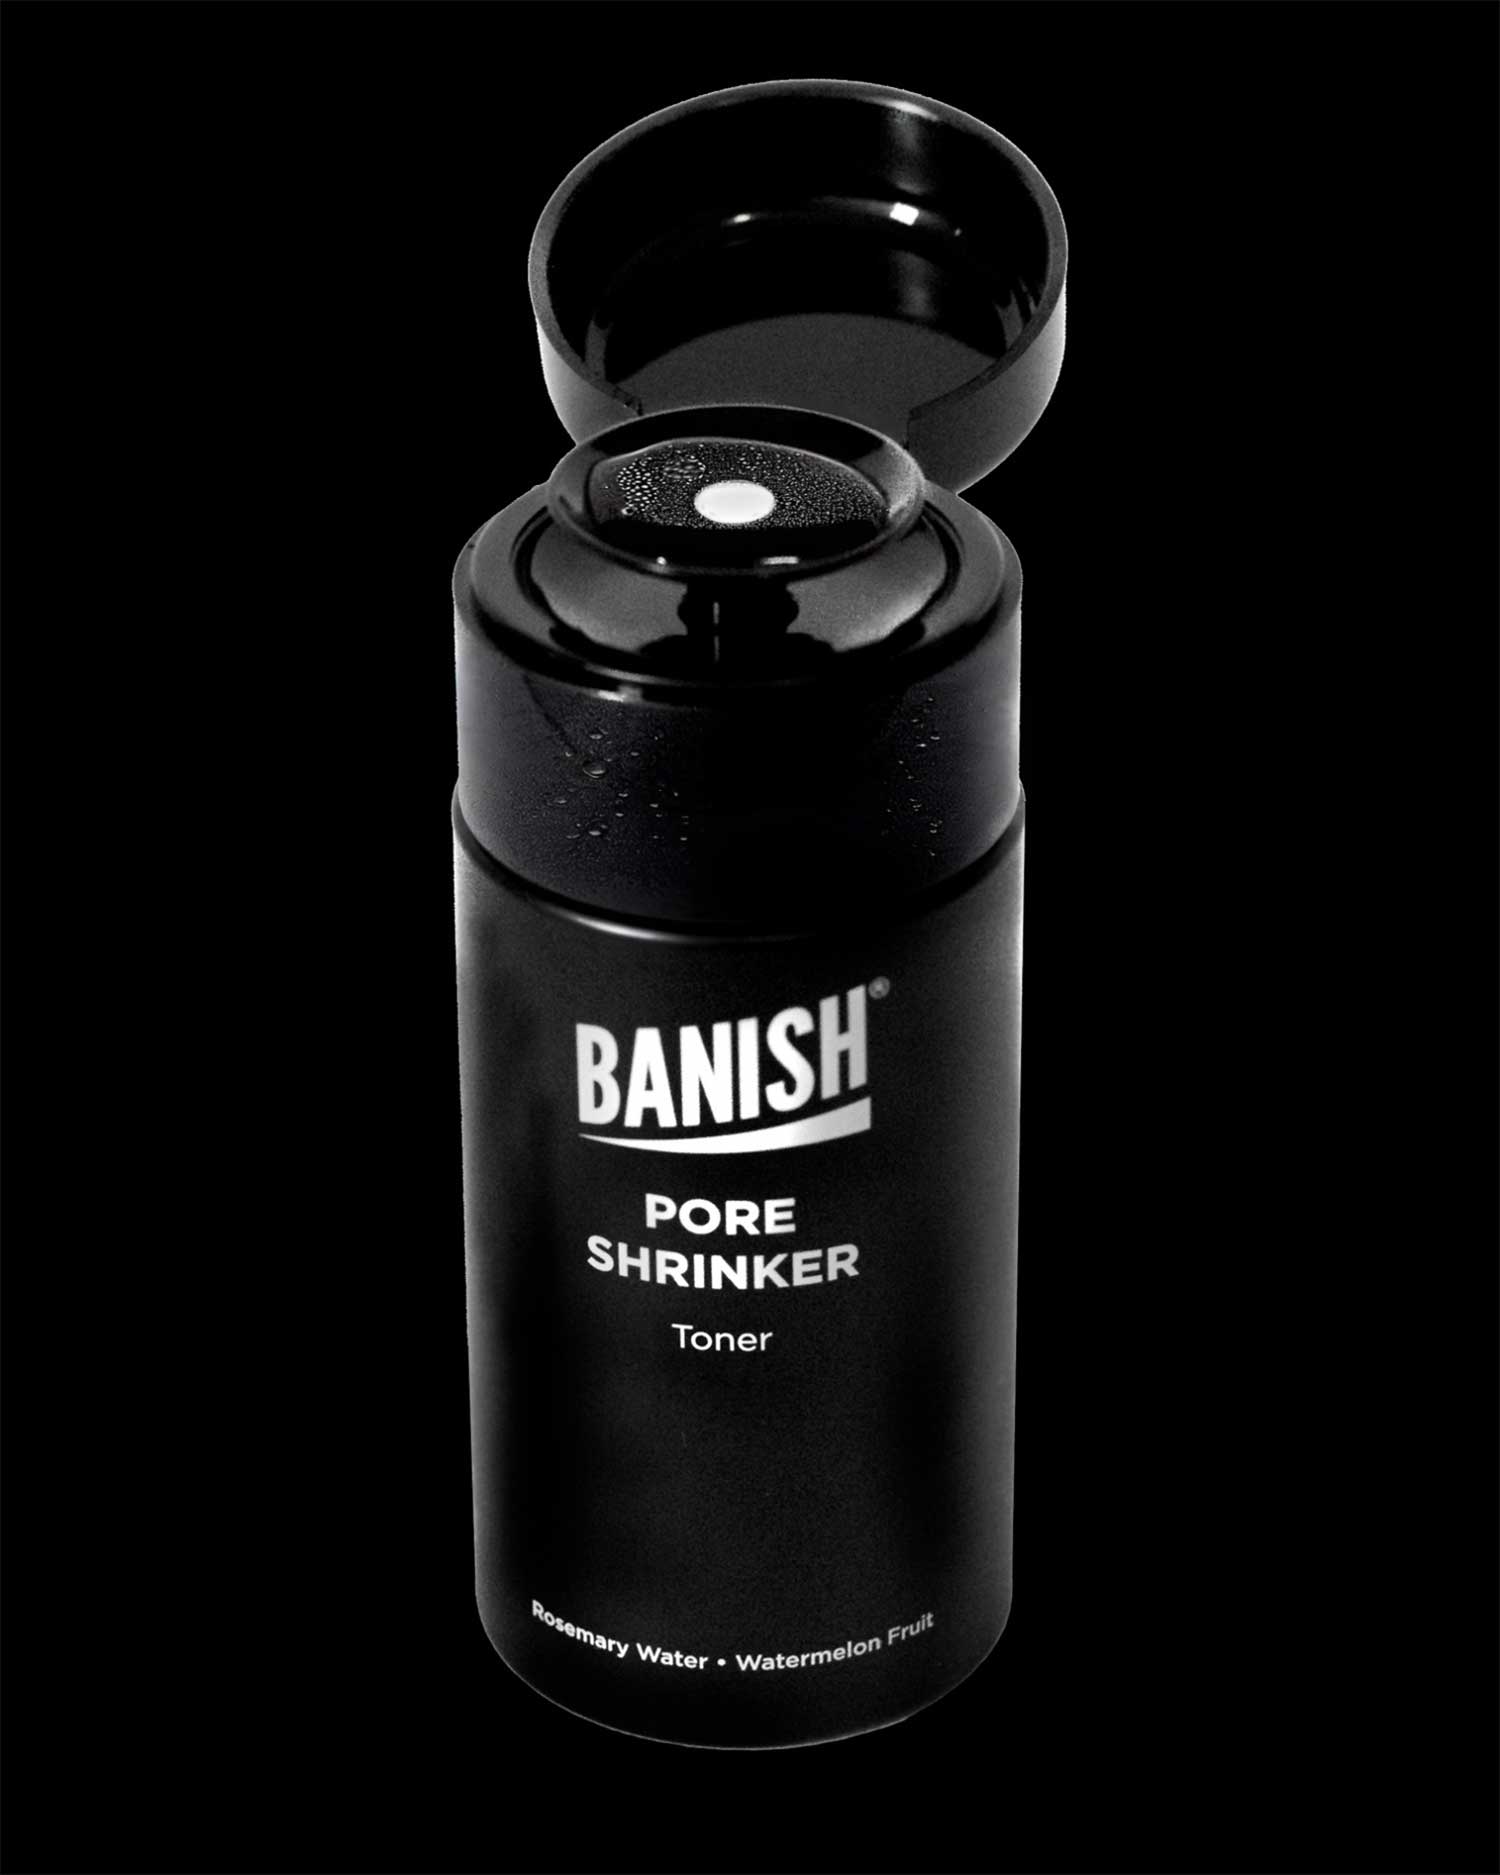 banish pore shrinker toner with cap open